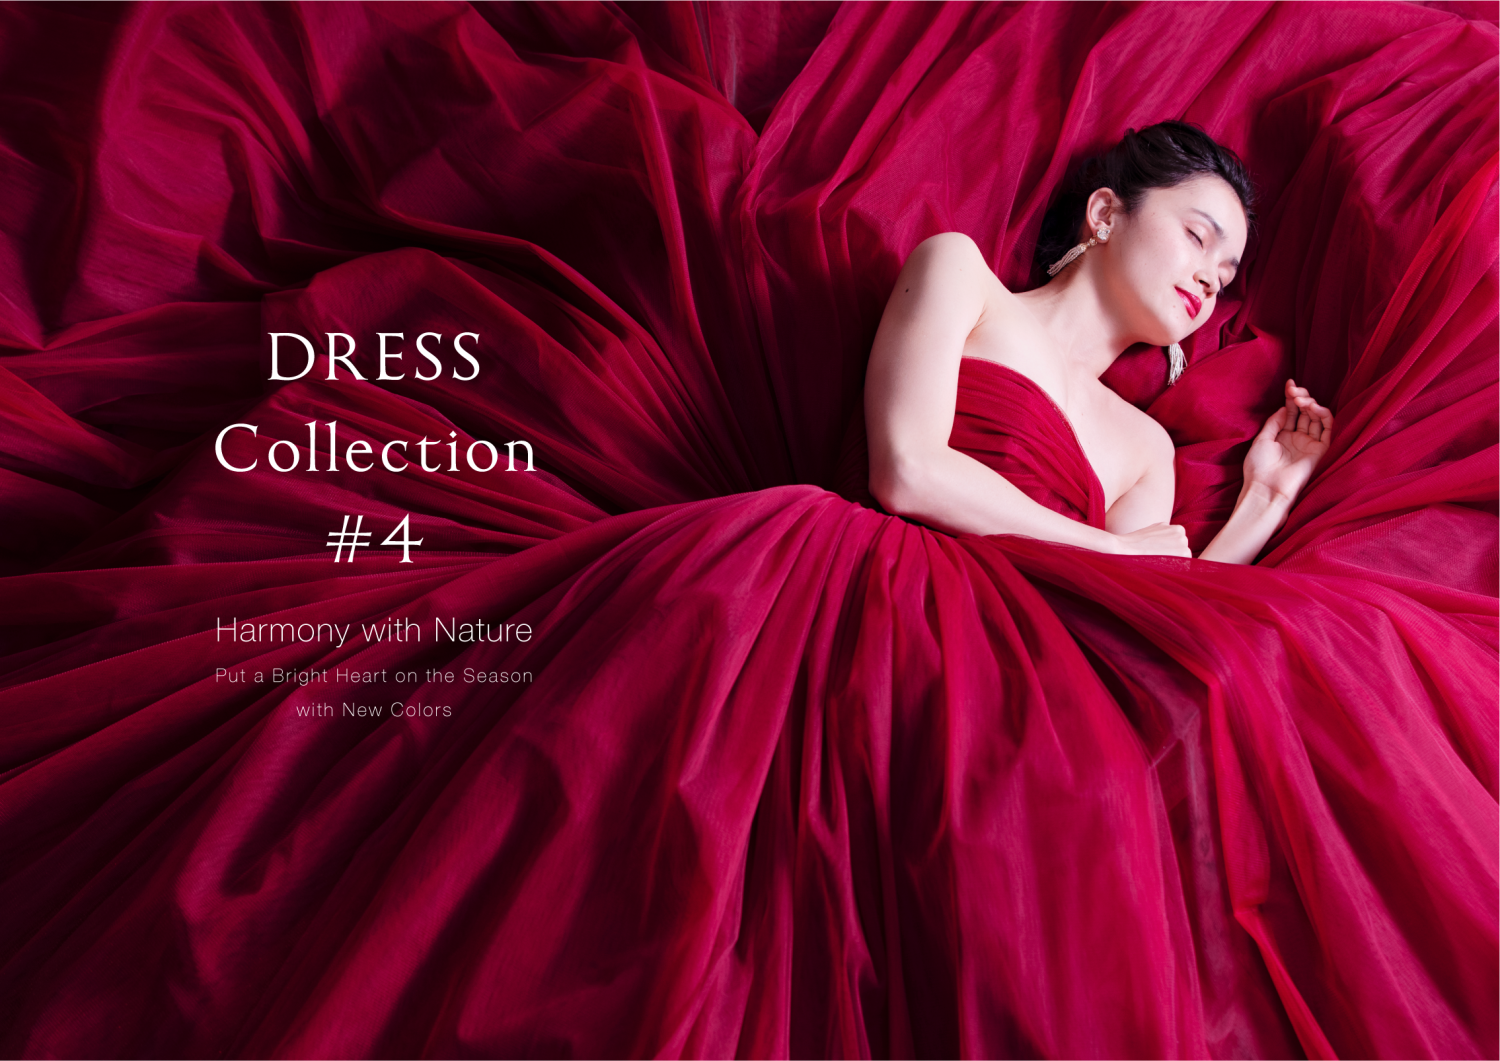 「DRESS Collection #4」リリースしました。